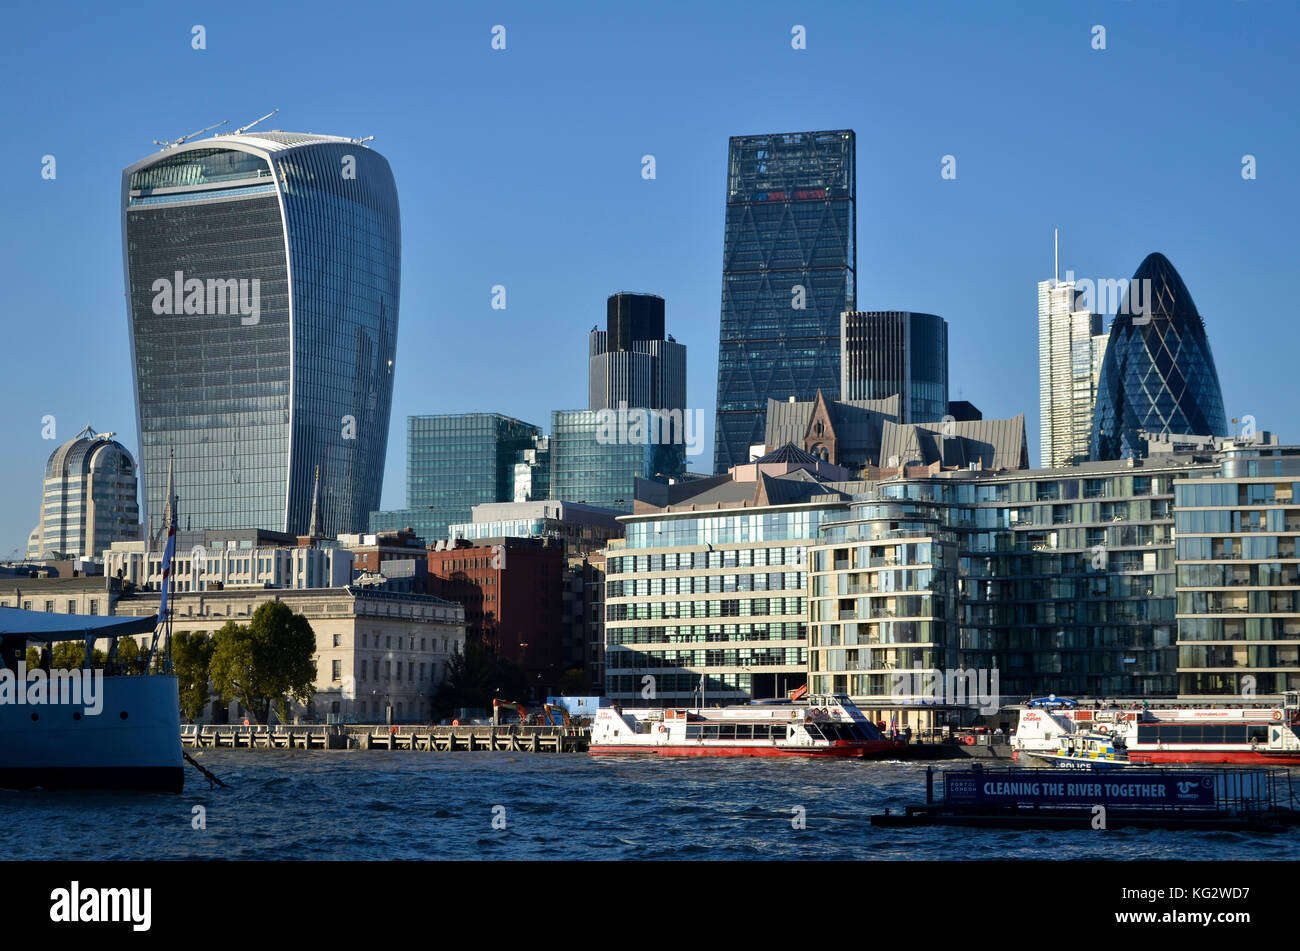 Il quartiere finanziario di Londra, Regno Unito. 20 Fenchurch Street, Leadenhall Building, torre 42 e cetriolino tutte visibili. Foto Stock